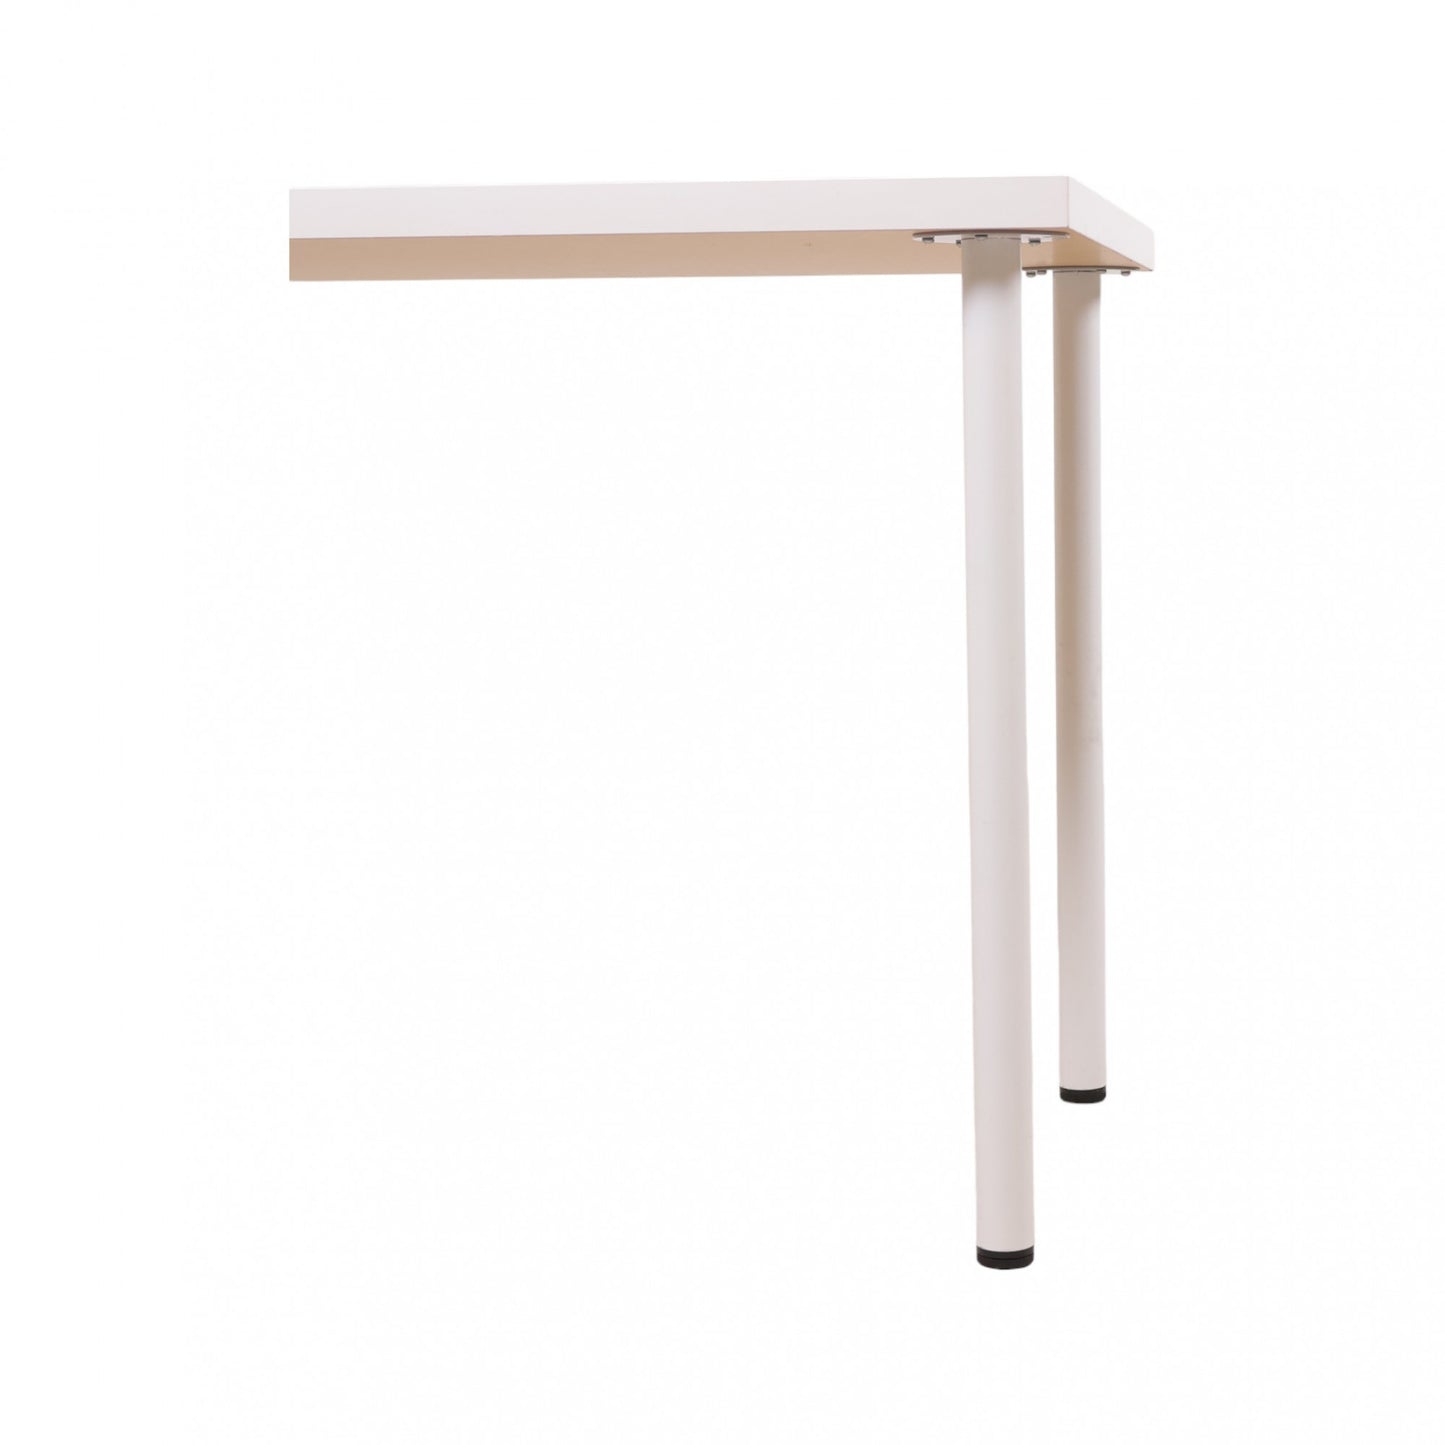 100x60 cm, IKEA LINNMON/ADILS helhvit skrivebord